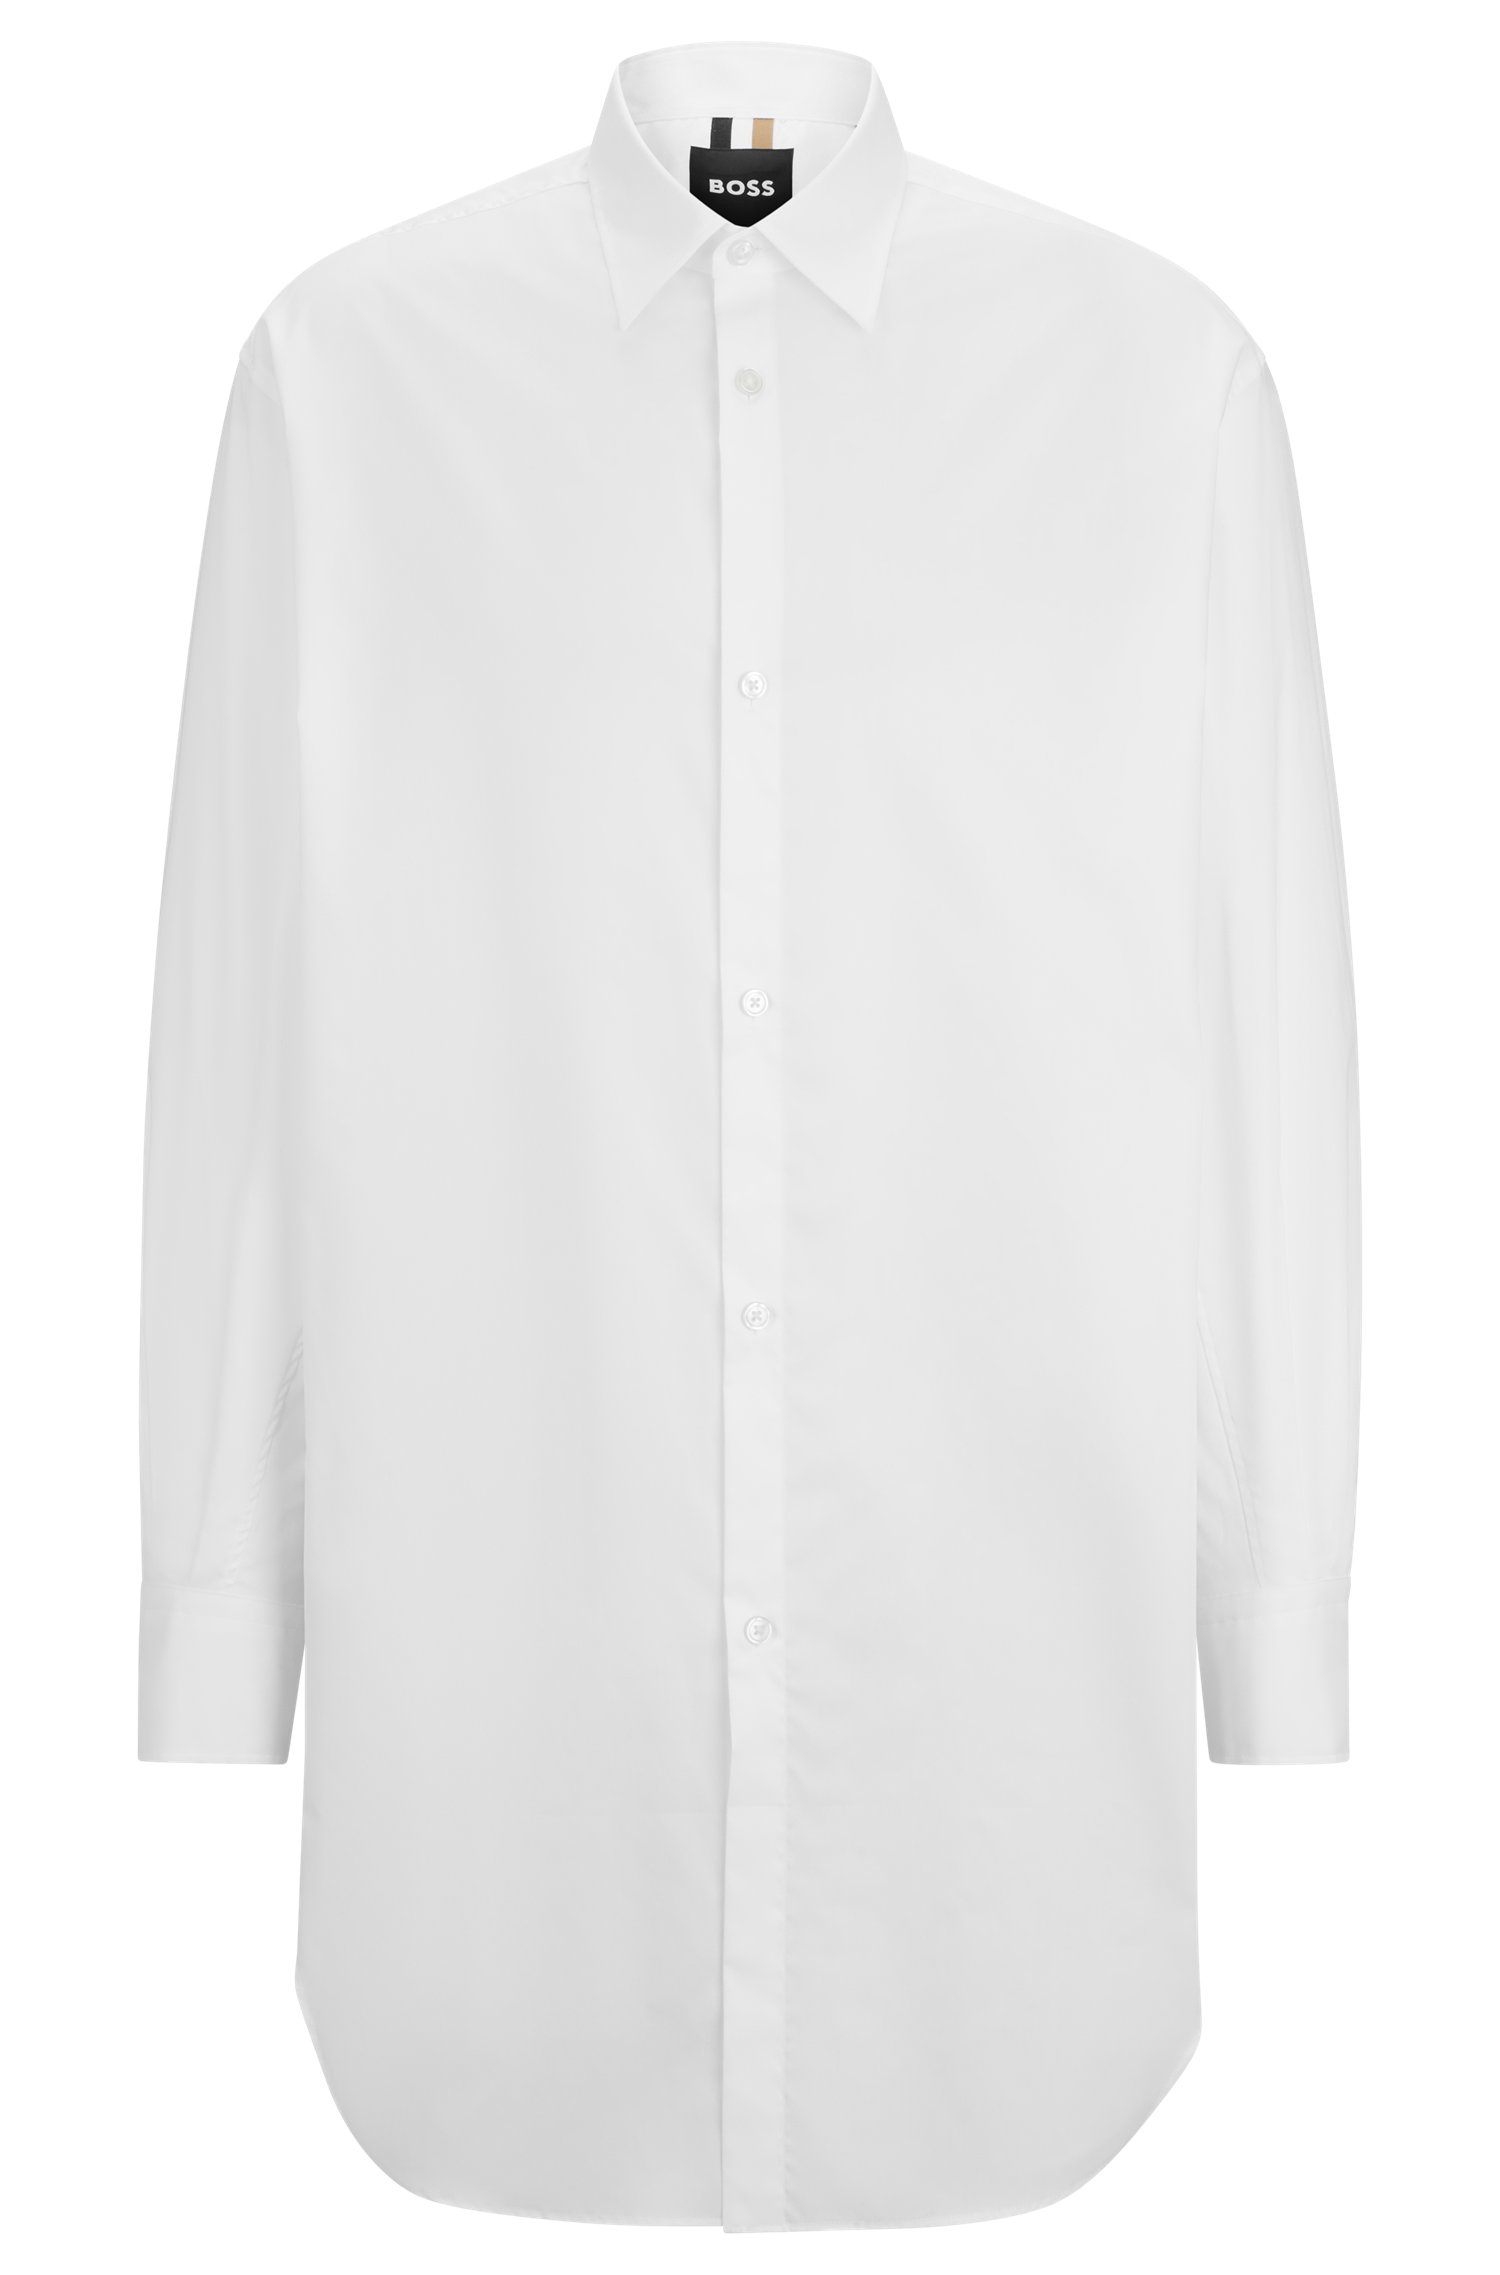 Camisa regular fit extralarga de popelín algodón planchado fácil